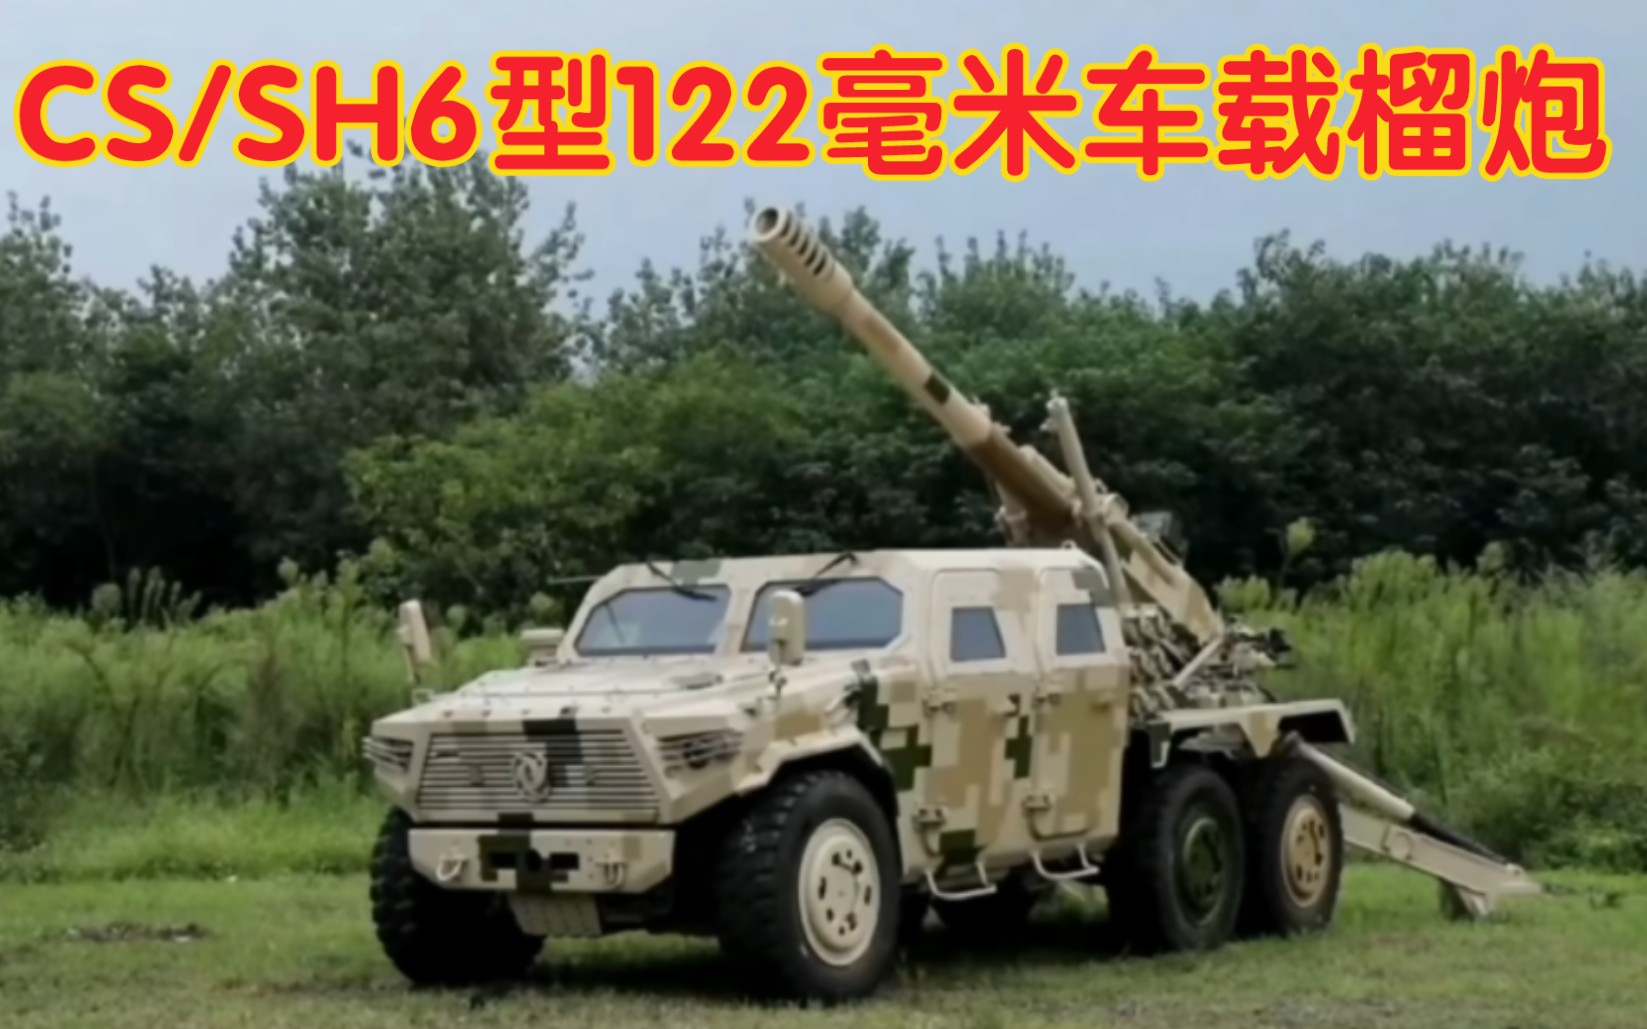 北方工业 中国兵器 CS/SH6型122毫米车载榴炮